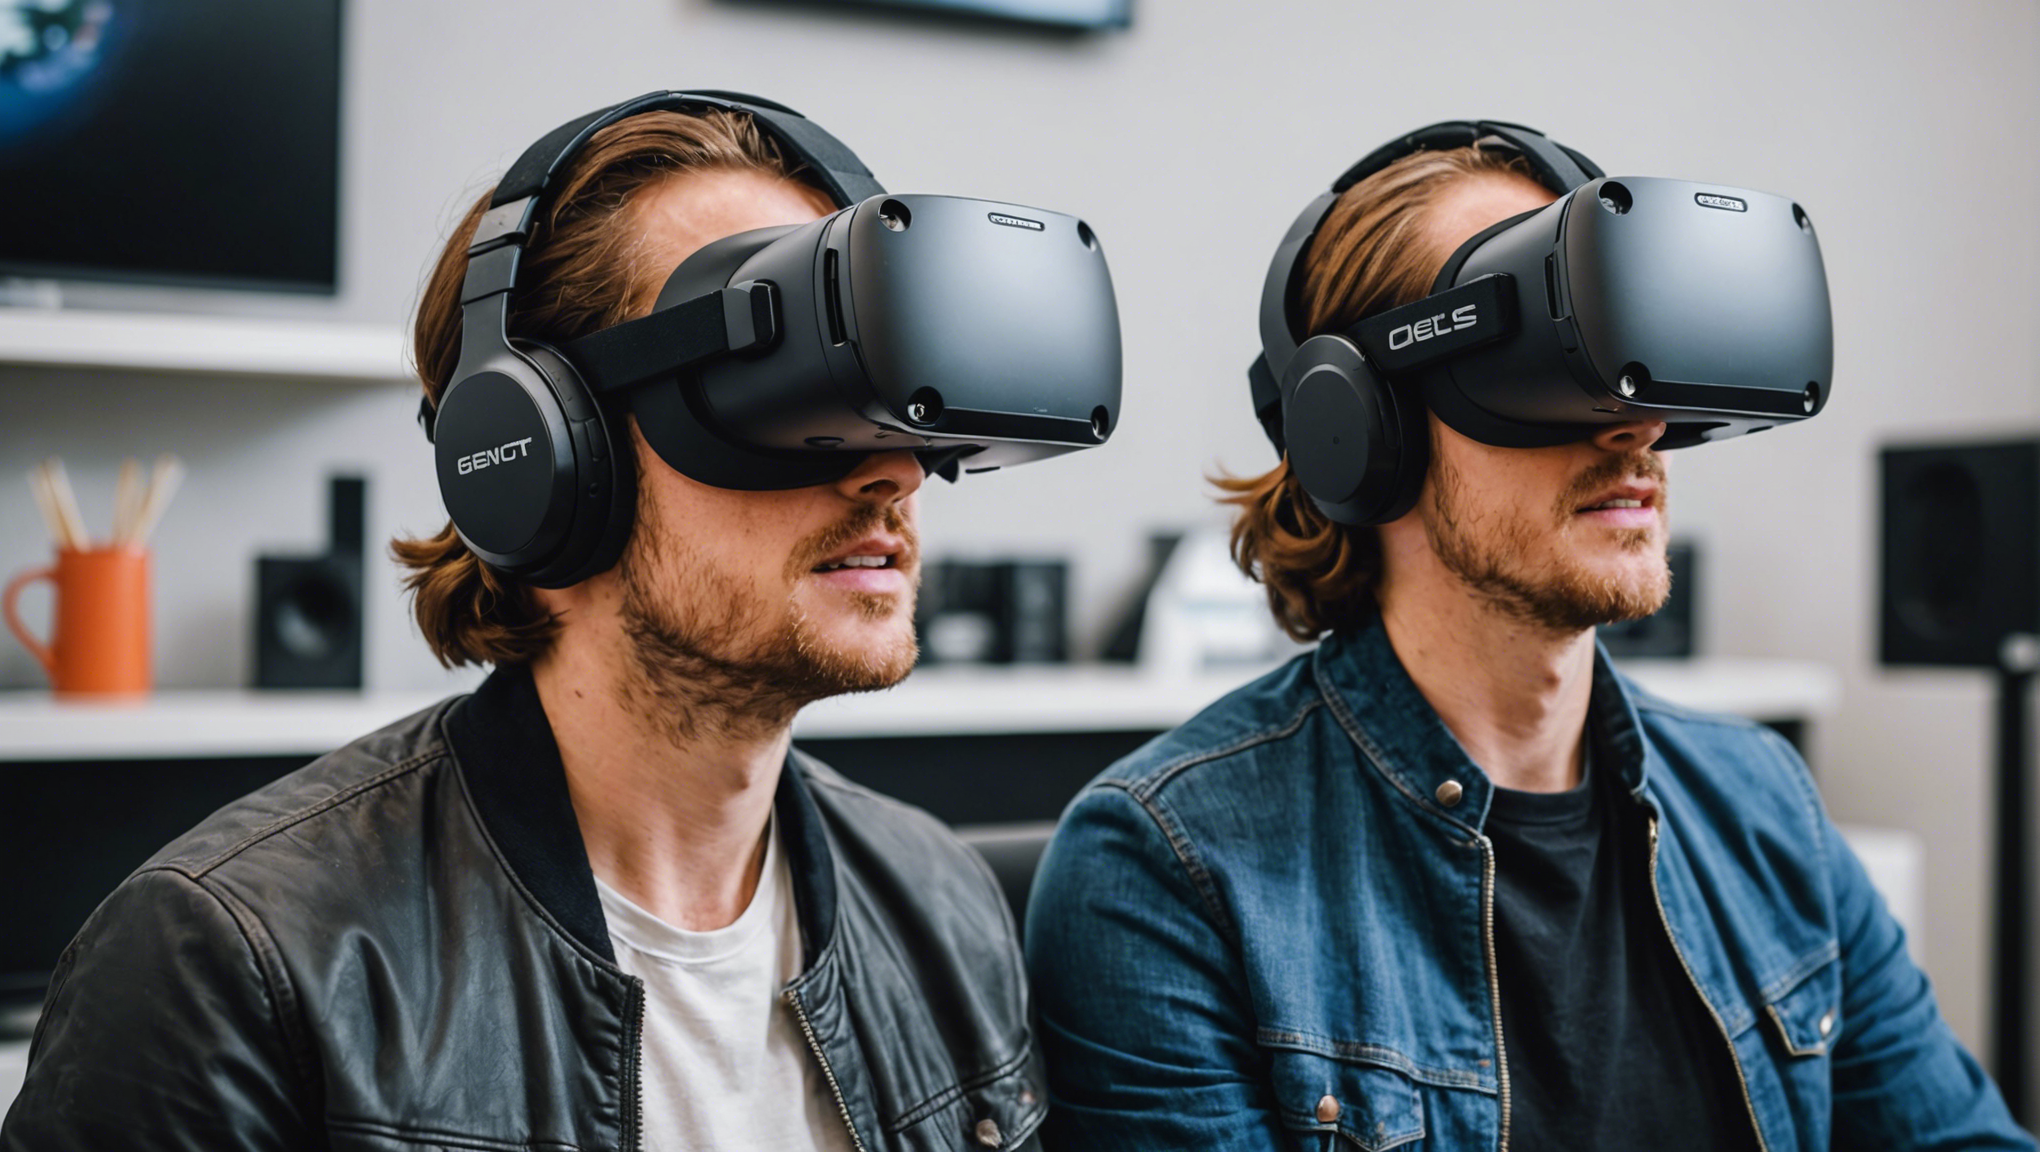 découvrez les meilleurs casques de réalité virtuelle du marché et plongez dans des expériences immersives sans pareil avec notre sélection de dispositifs de pointe.